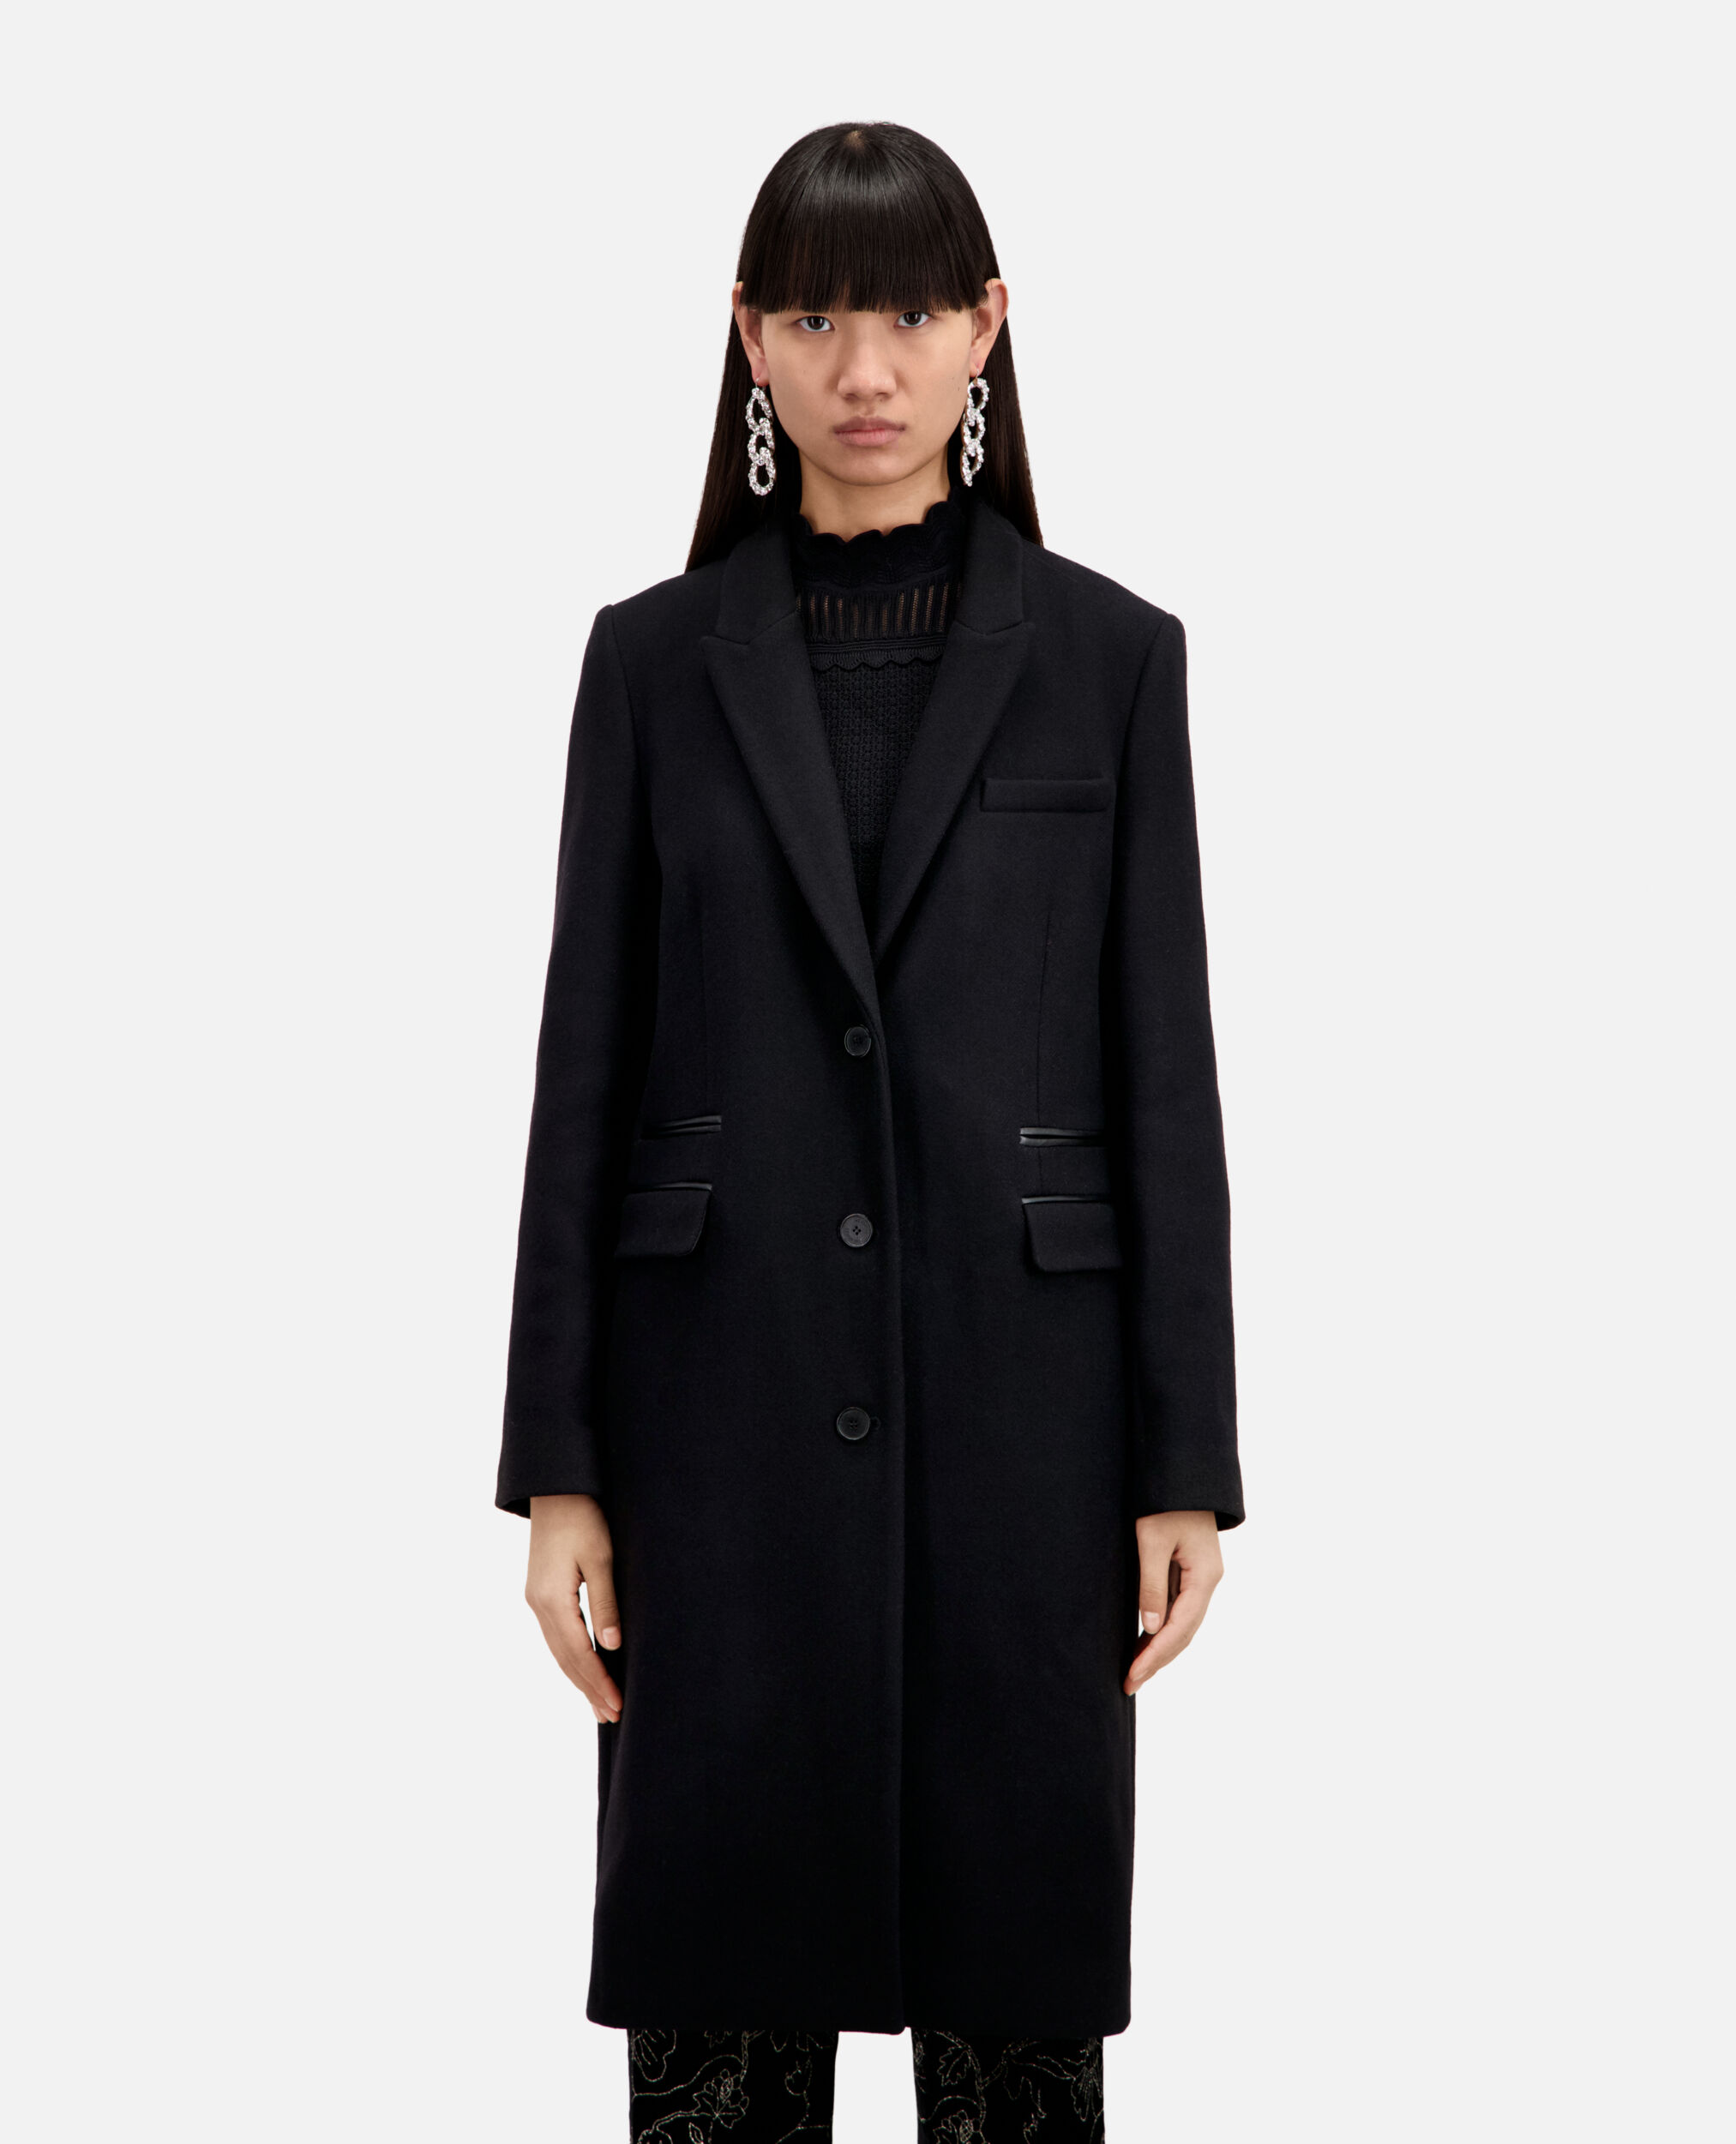 Long black coat in wool blend | The Kooples